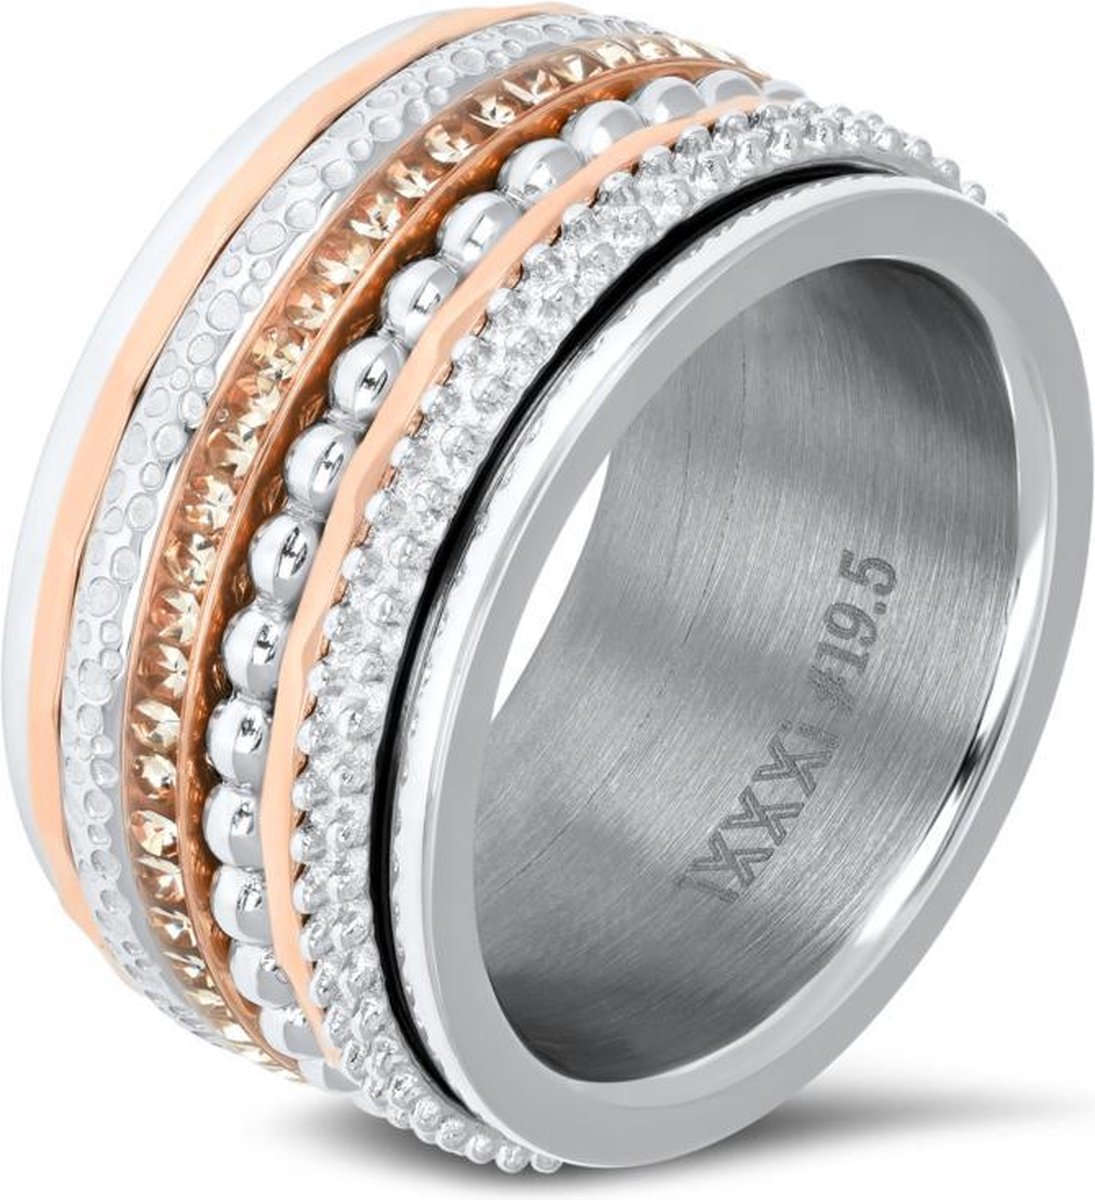 kleuring toxiciteit enthousiasme Complete iXXXi ring ; zilver - rosé goud kleurig | bol.com